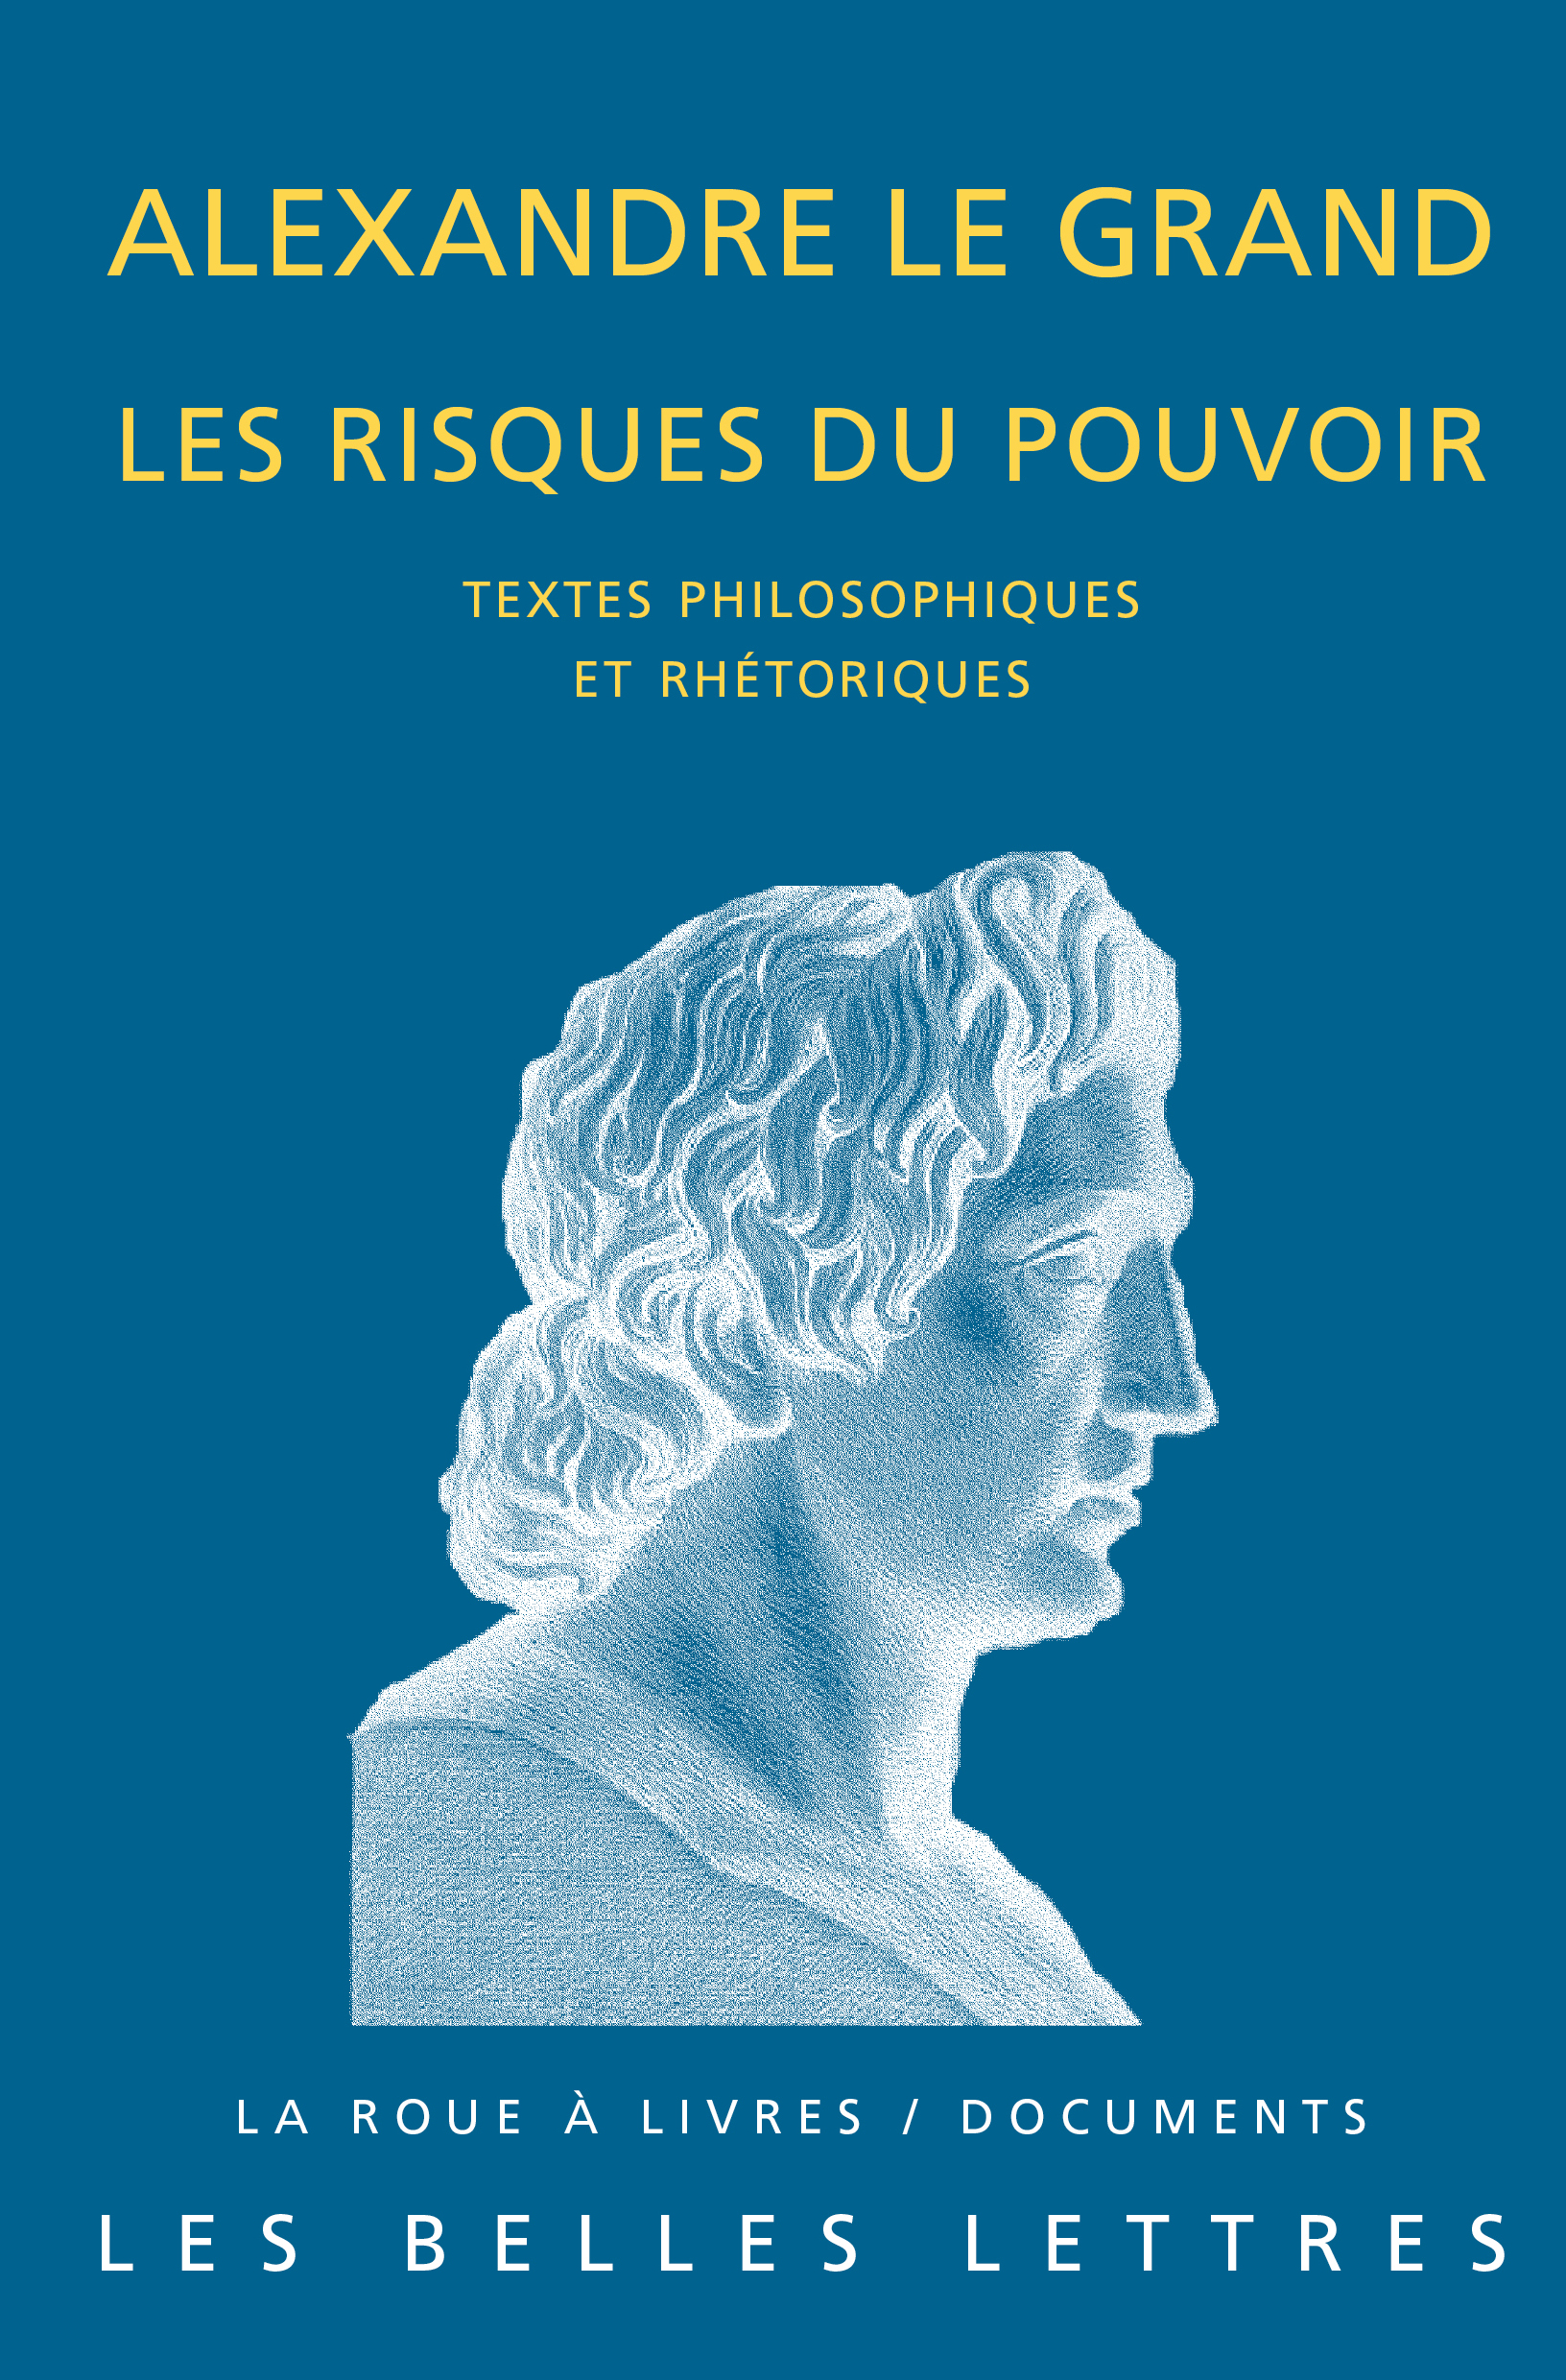 Alexandre le Grand, les risques du pouvoir. Textes philosophiques et rhétoriques, 2013, 270 p. Textes traduits et commentés par L. Pernot